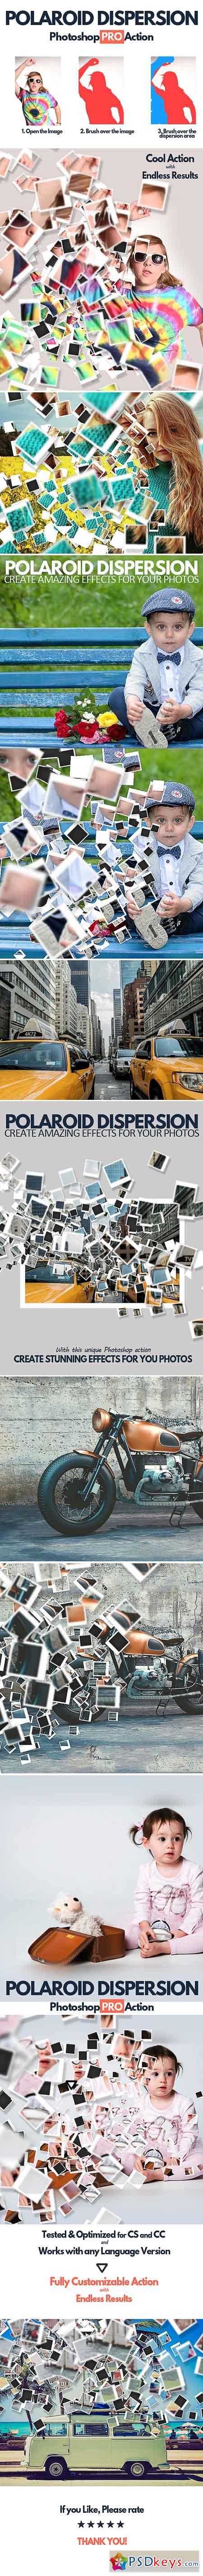 Polaroid Dispersion Photoshop Action 17109306